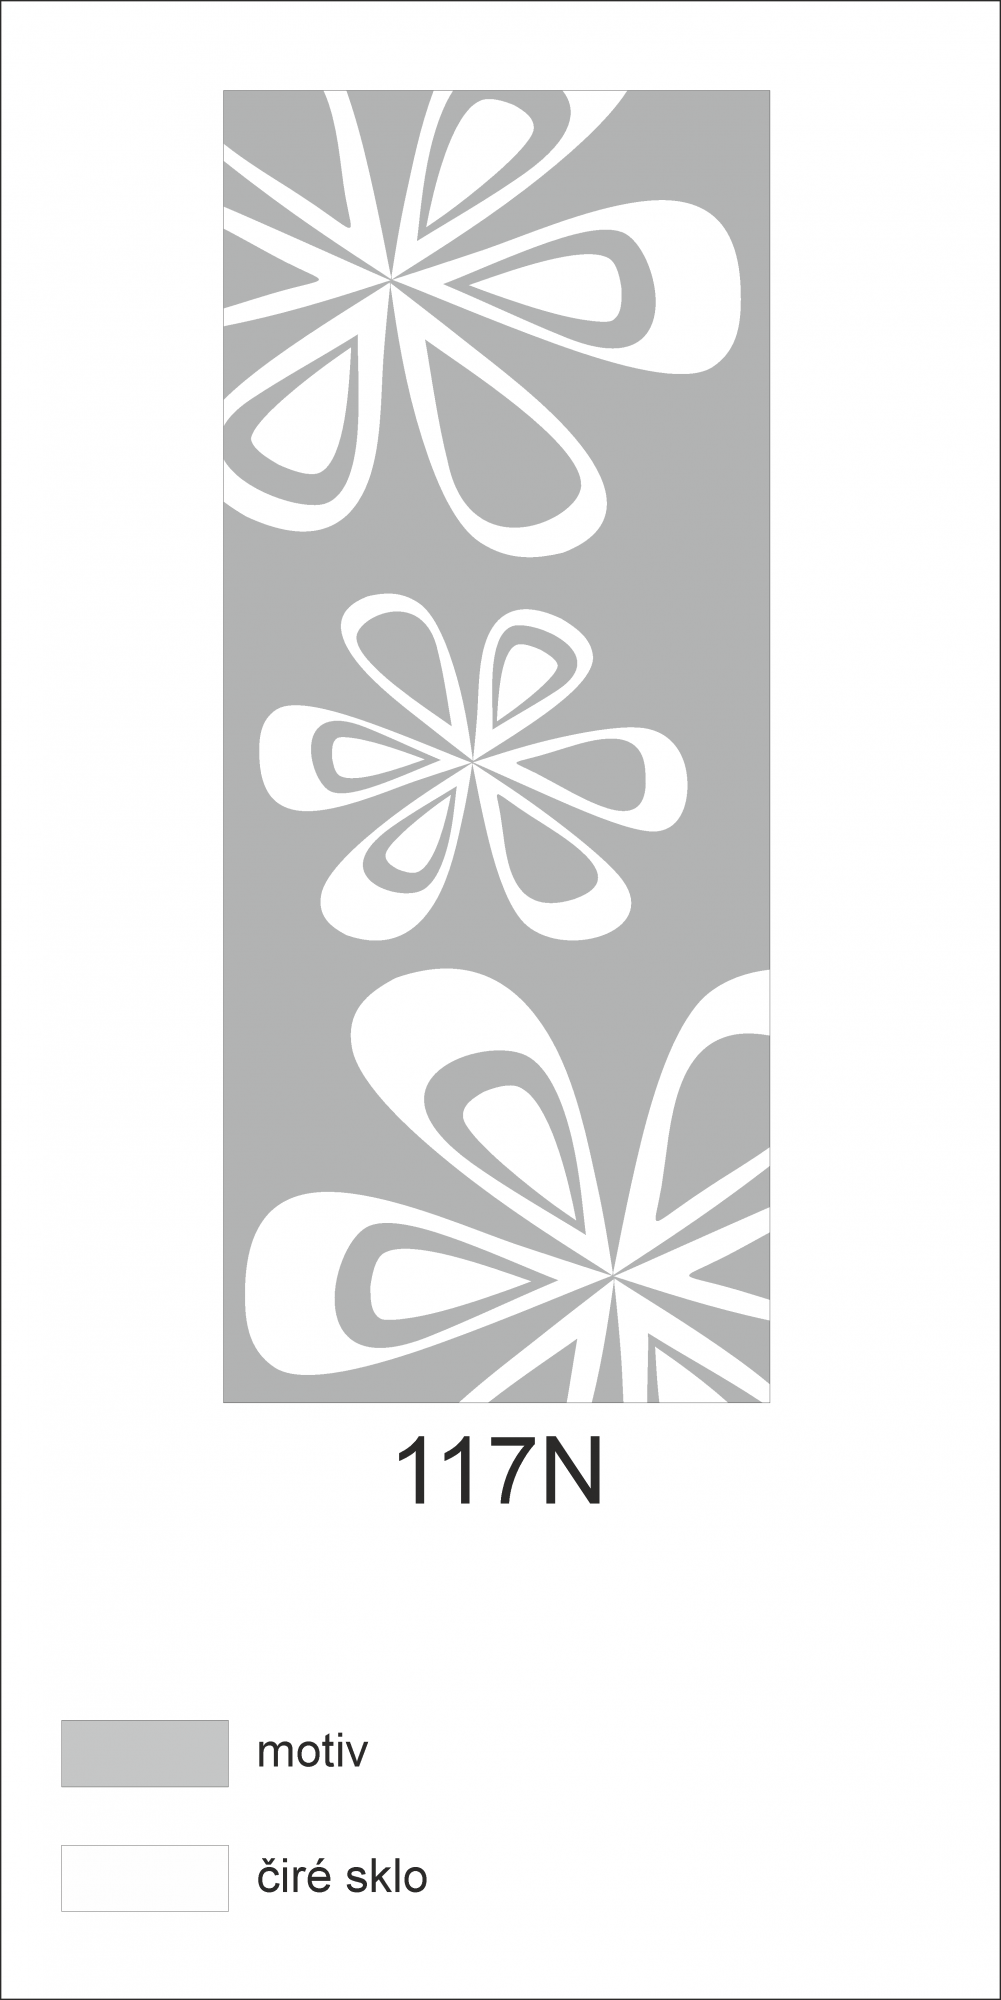 Možný motiv na skleněných dveřích nebo skleněných stěnách 117N - motiv květin